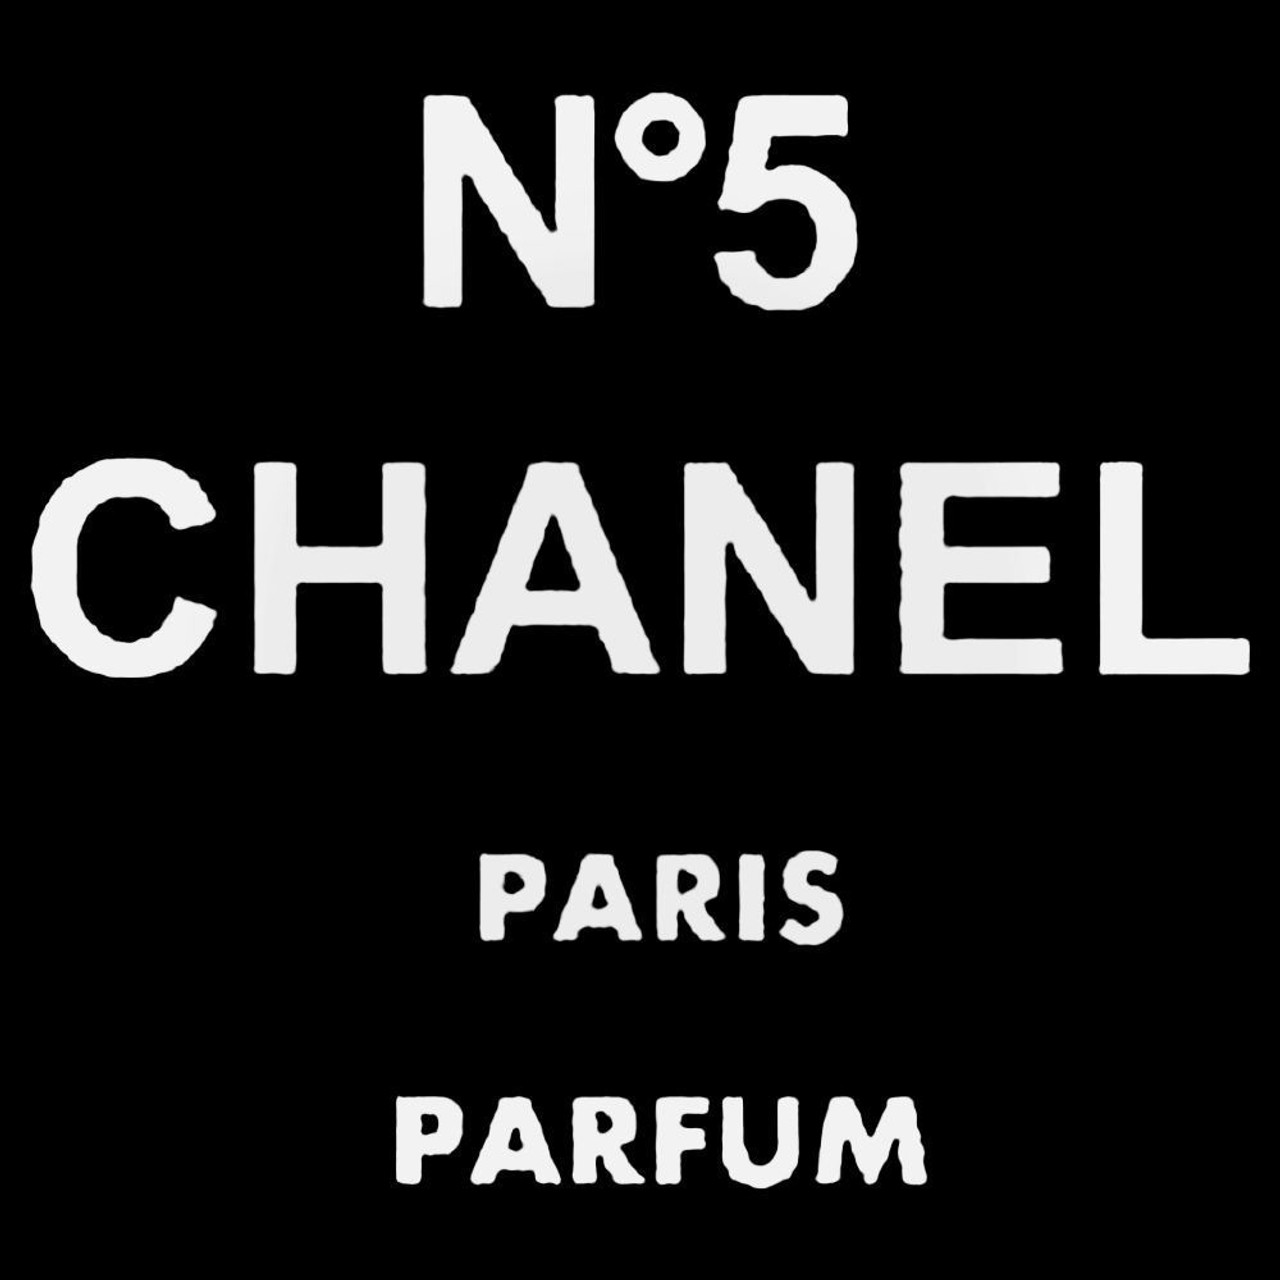 No5 Chanel Parfum Paris Decal Sticker